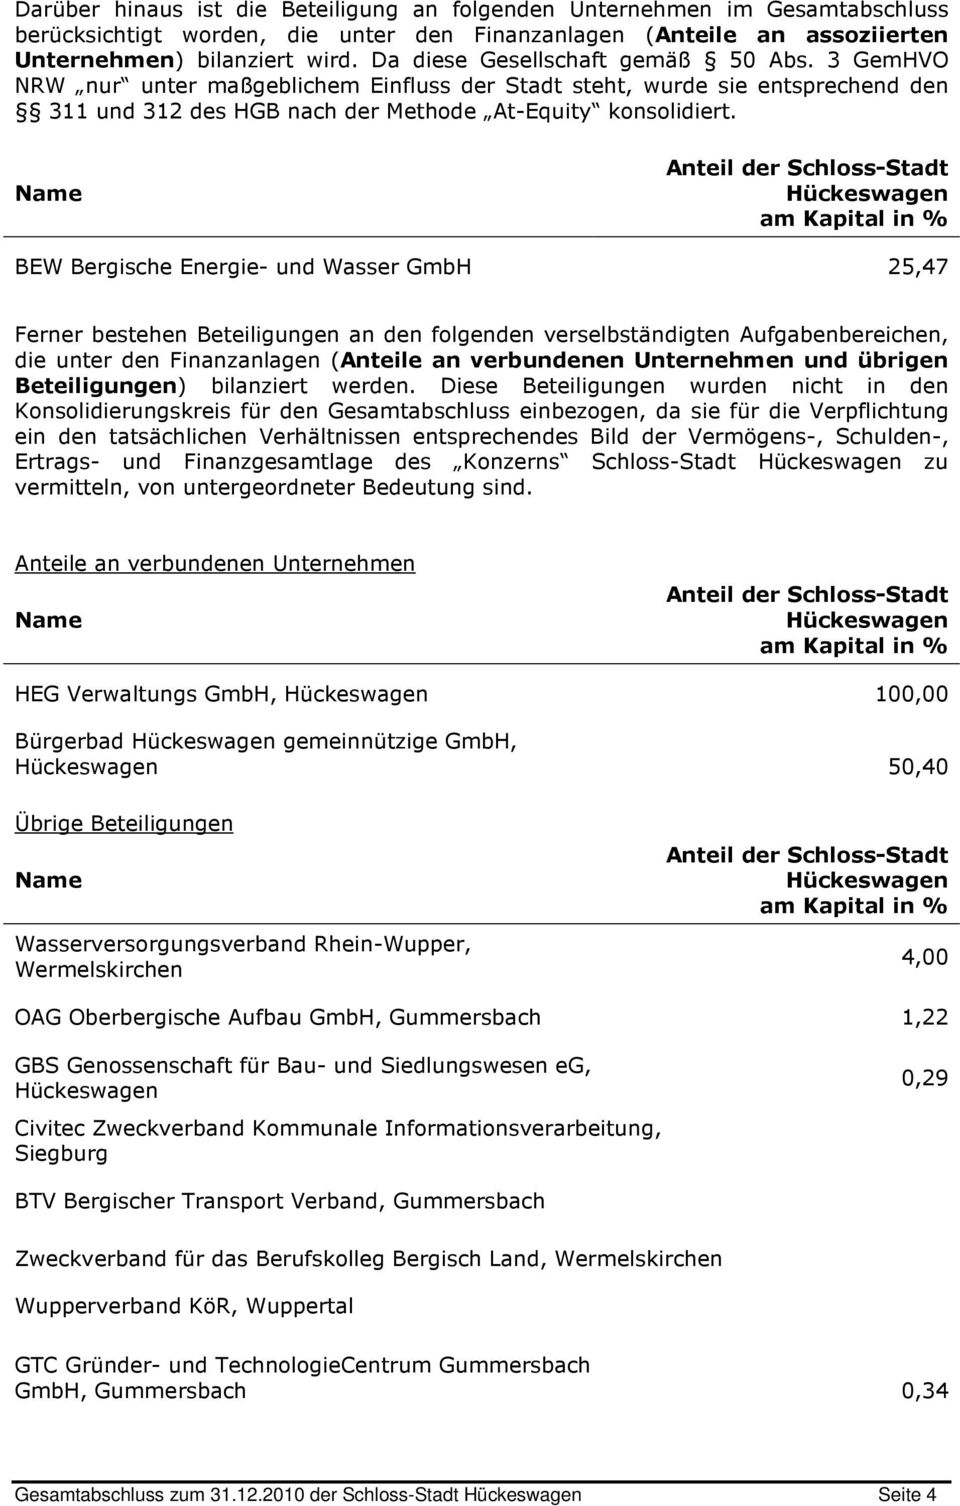 Name Anteil der Schloss-Stadt Hückeswagen am Kapital in % BEW Bergische Energie- und Wasser GmbH 25,47 Ferner bestehen Beteiligungen an den folgenden verselbständigten Aufgabenbereichen, die unter